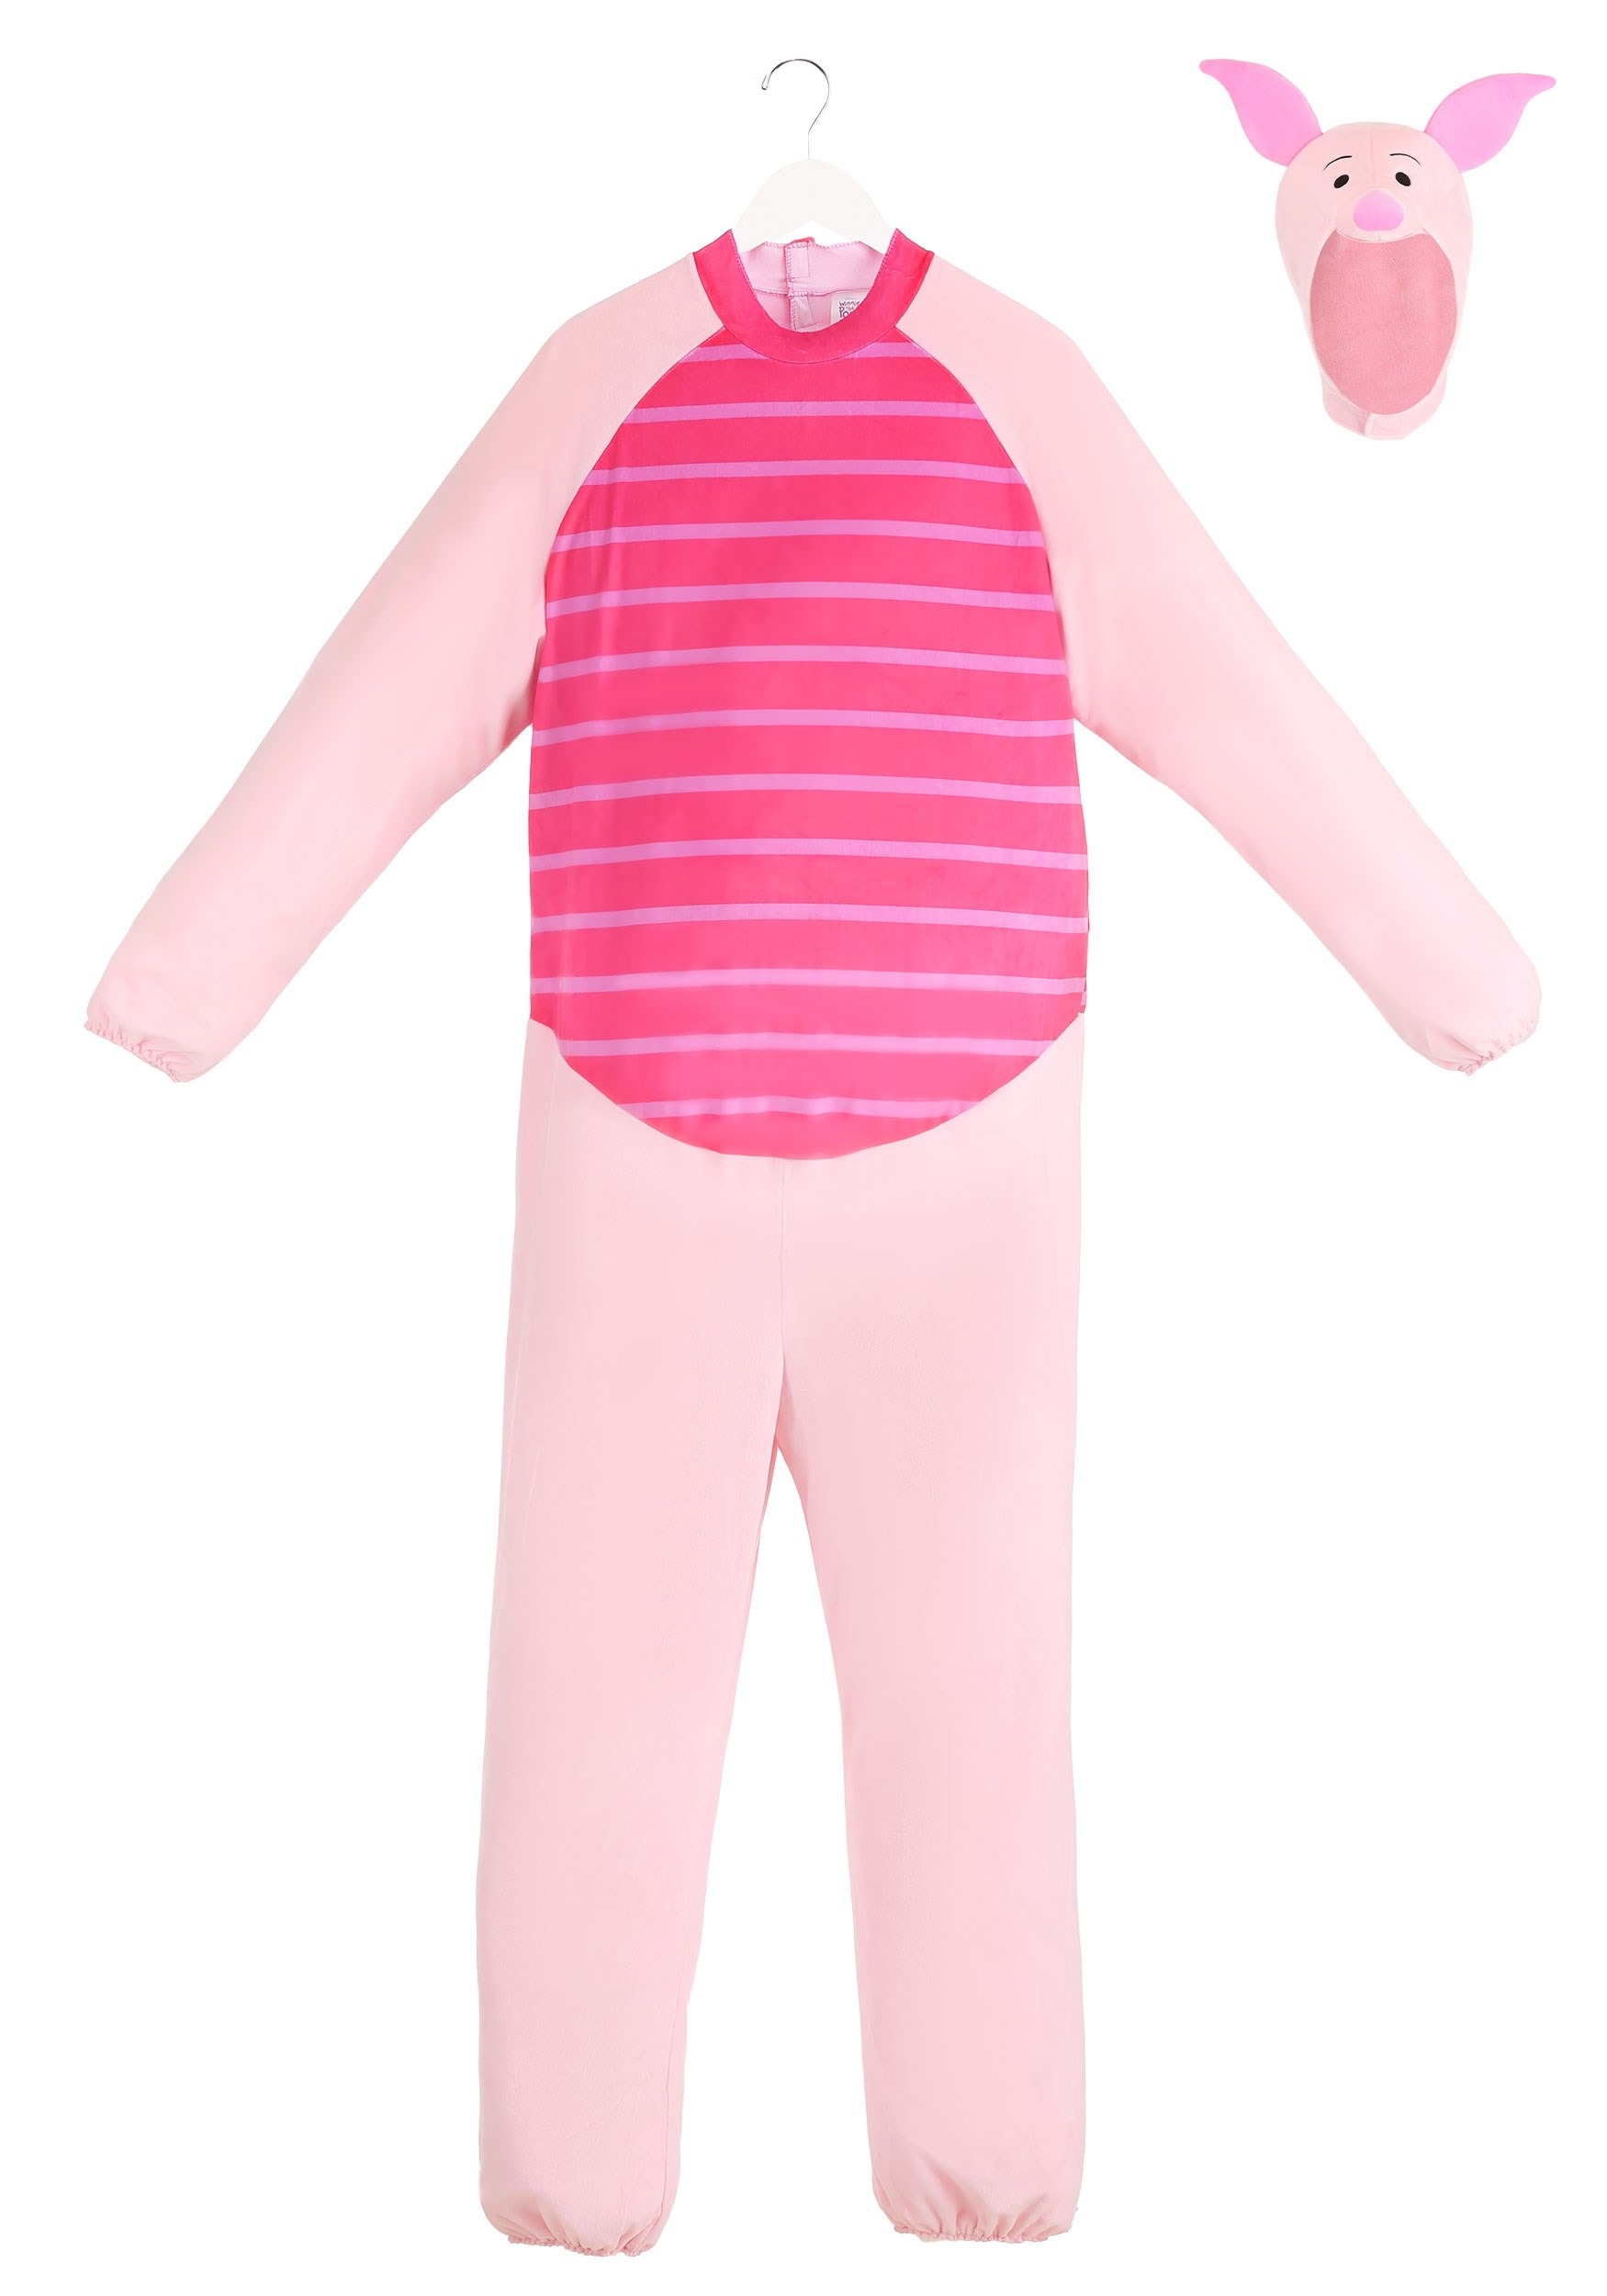 Beast Pal Unisex Animal One Piece Adult Pink Pig Plush Costume Pajamas Onesie 